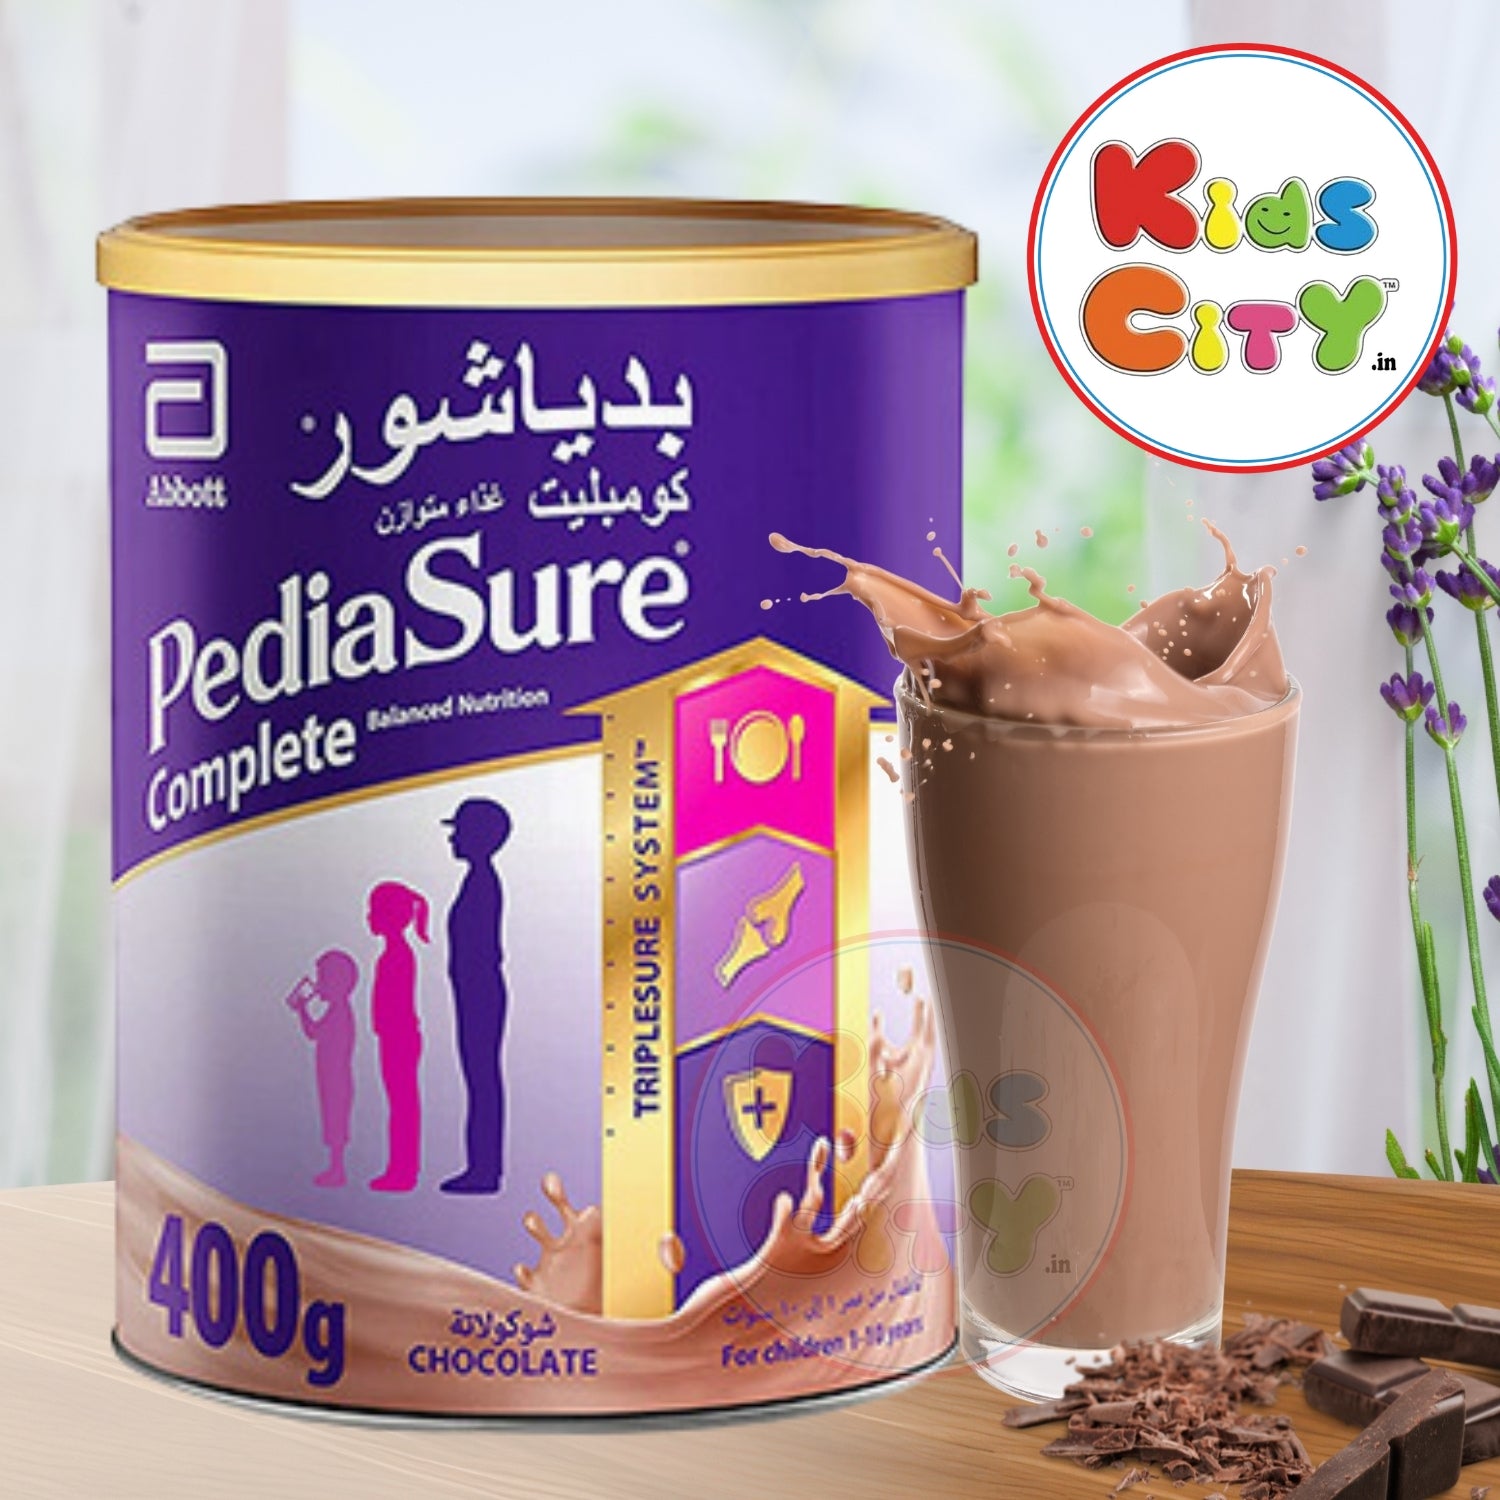 Pediasure Complete 400g - Chocolate (1-10 years)